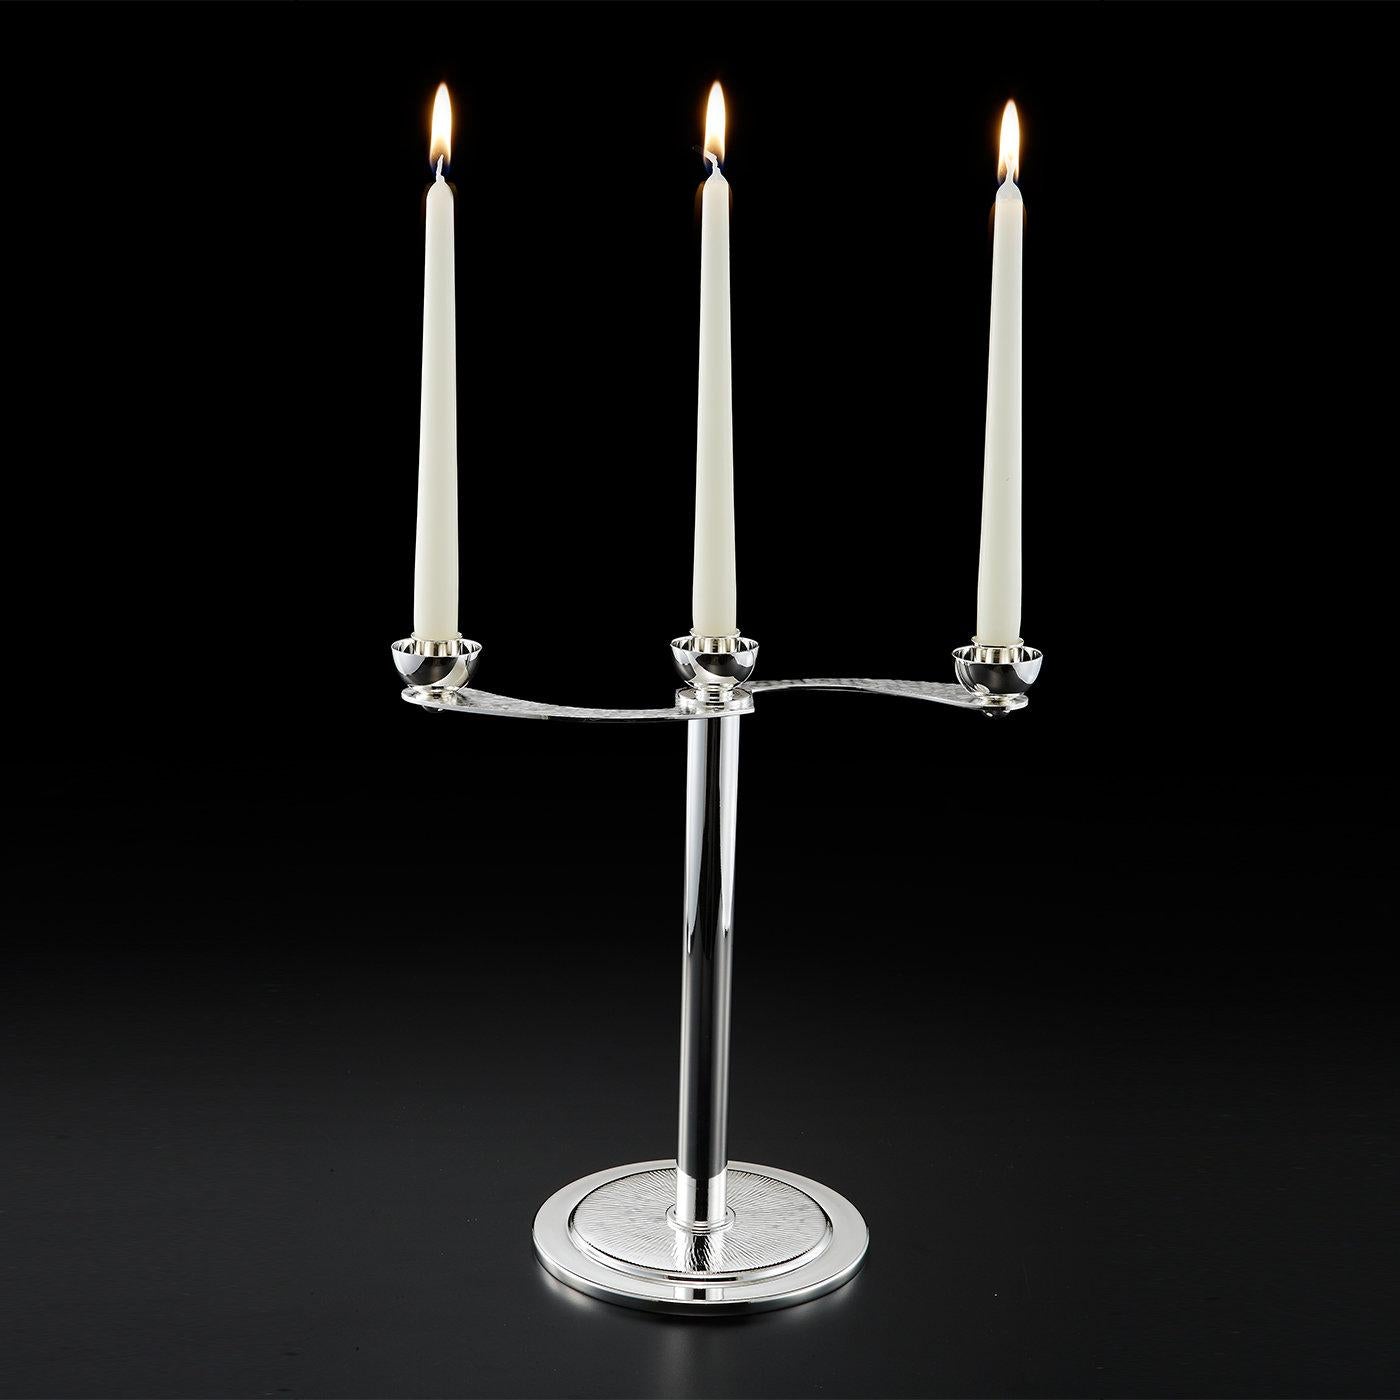 Der schöne Kandelaber fasst drei Kerzen und ist elegant aus einer versilberten Legierung gefertigt. Der Kandelaber kann in zwei Teile zerlegt werden, wobei der obere Teil die Kerzen aufnimmt und der untere Teil als Vase dient. Die Arme der